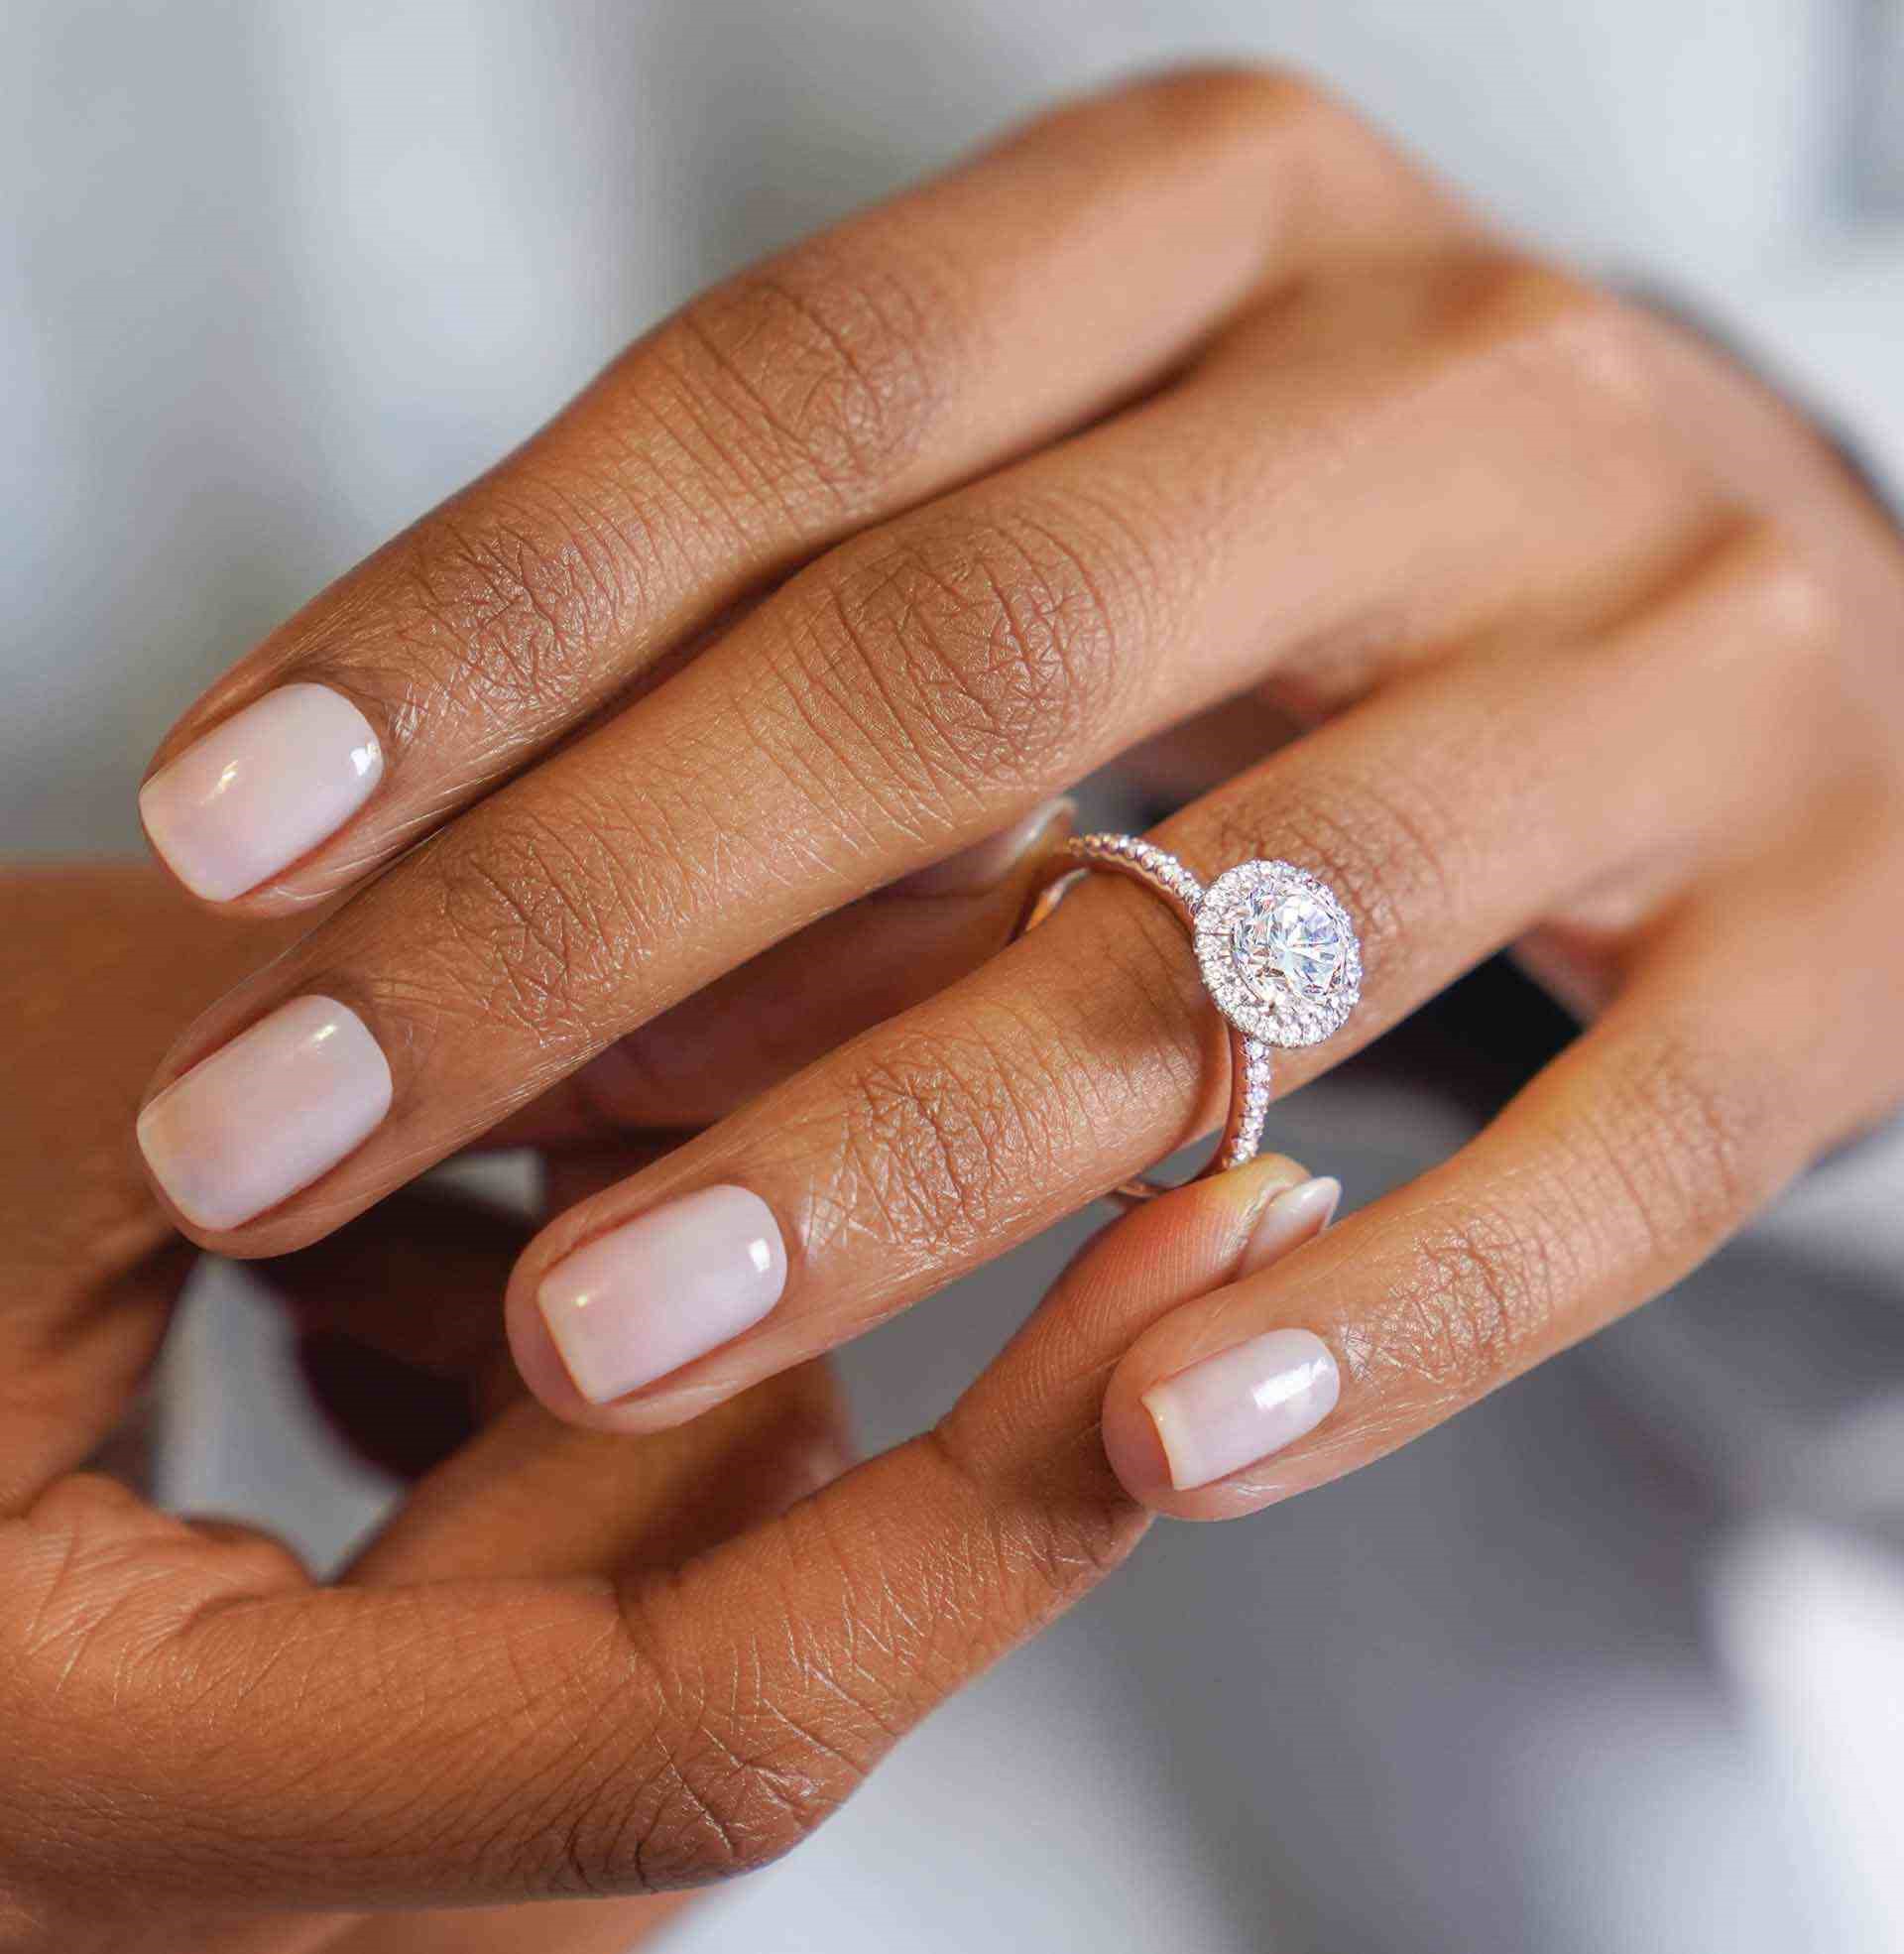 هنگام خرید انگشتر نامزدی به برش الماس توجه داشته باشید